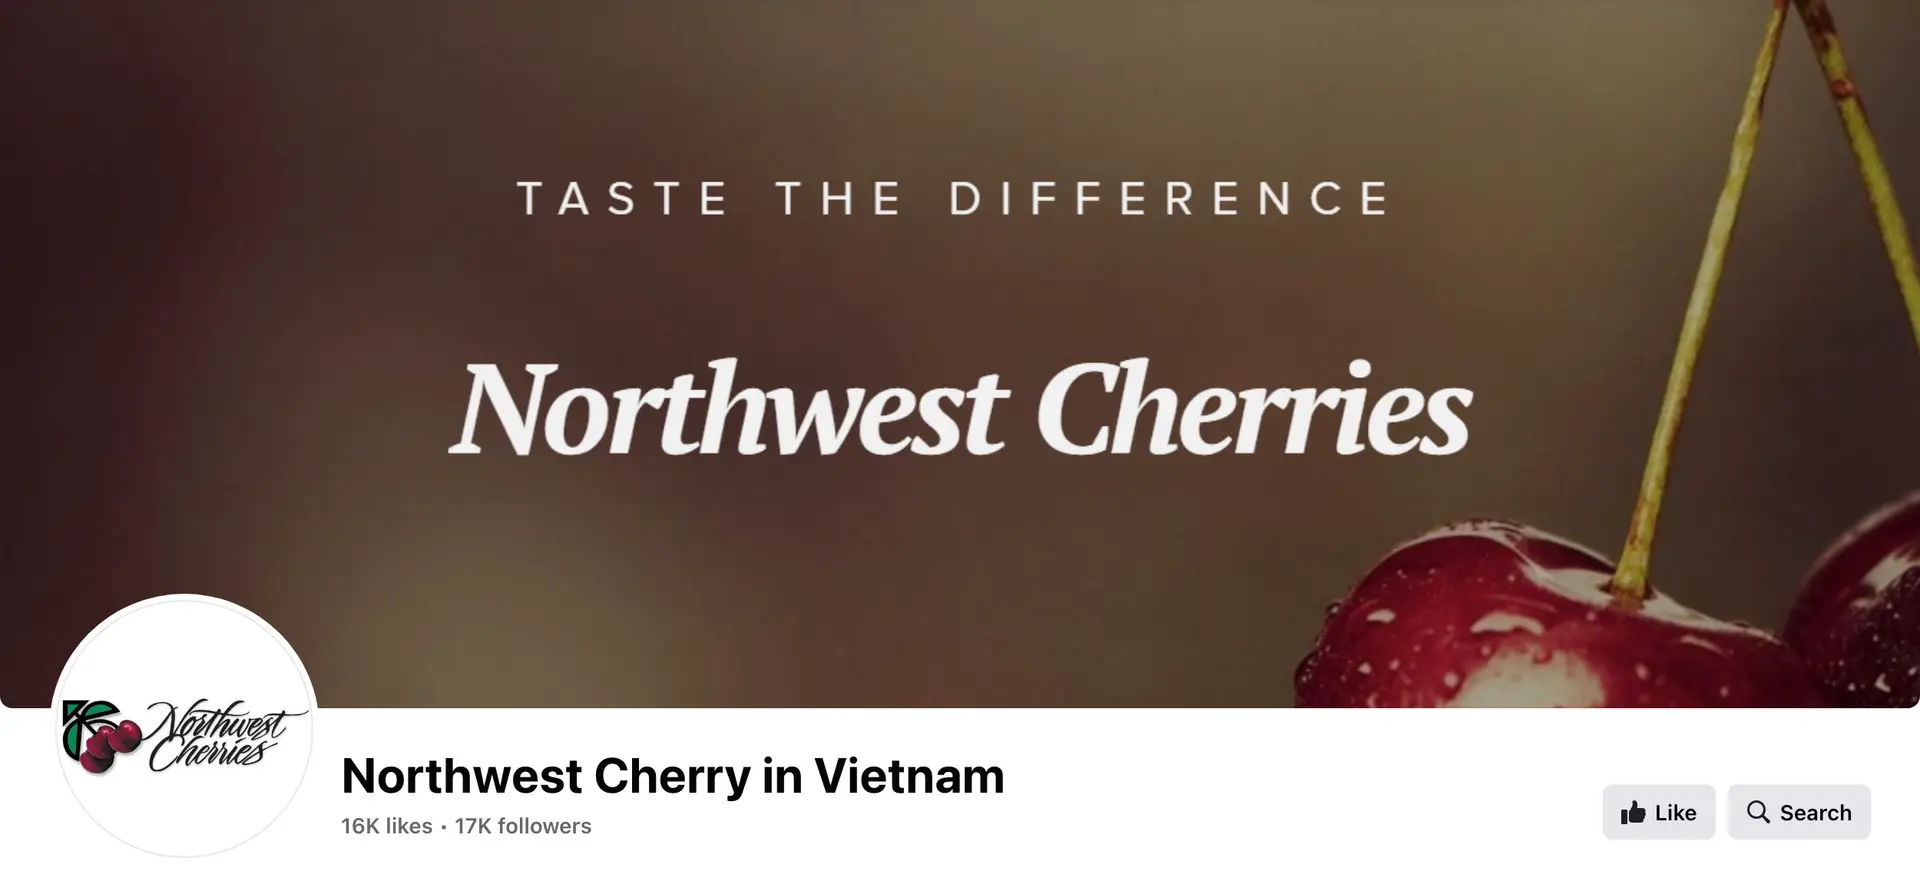 Northwest Cherry in Vietnam